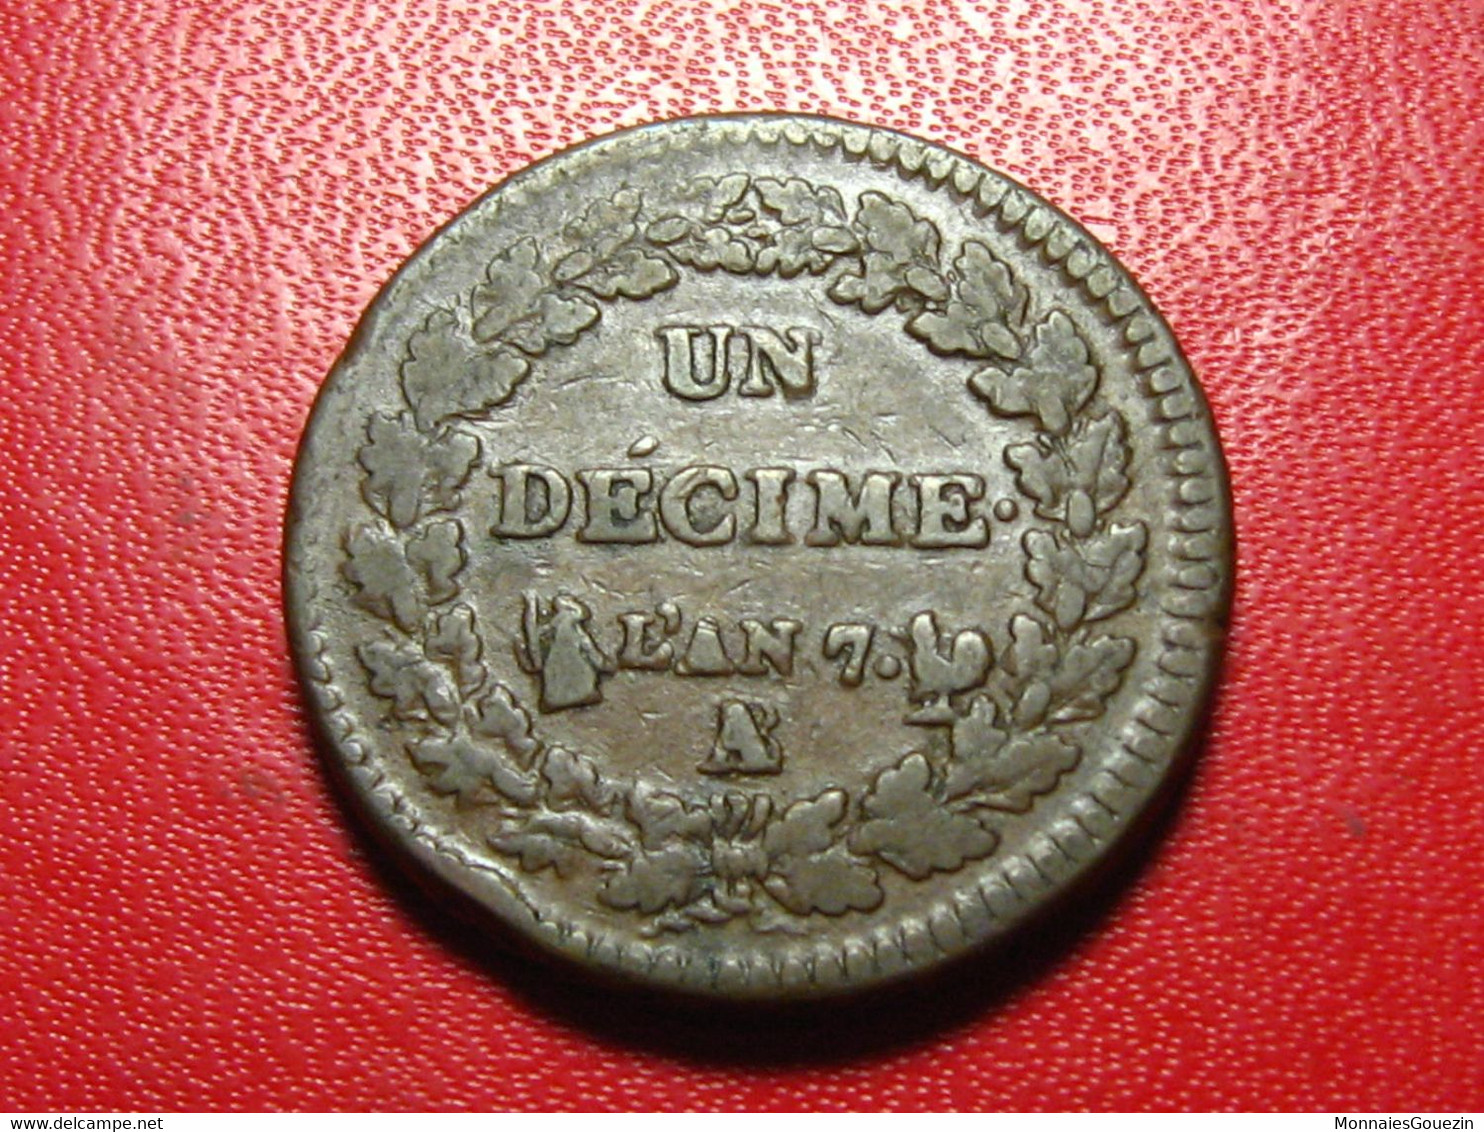 France - Décime An 7/5 A/B Paris/Rouen Dupré - Magnifique Coin Choqué 5088 - 1795-1799 French Directory